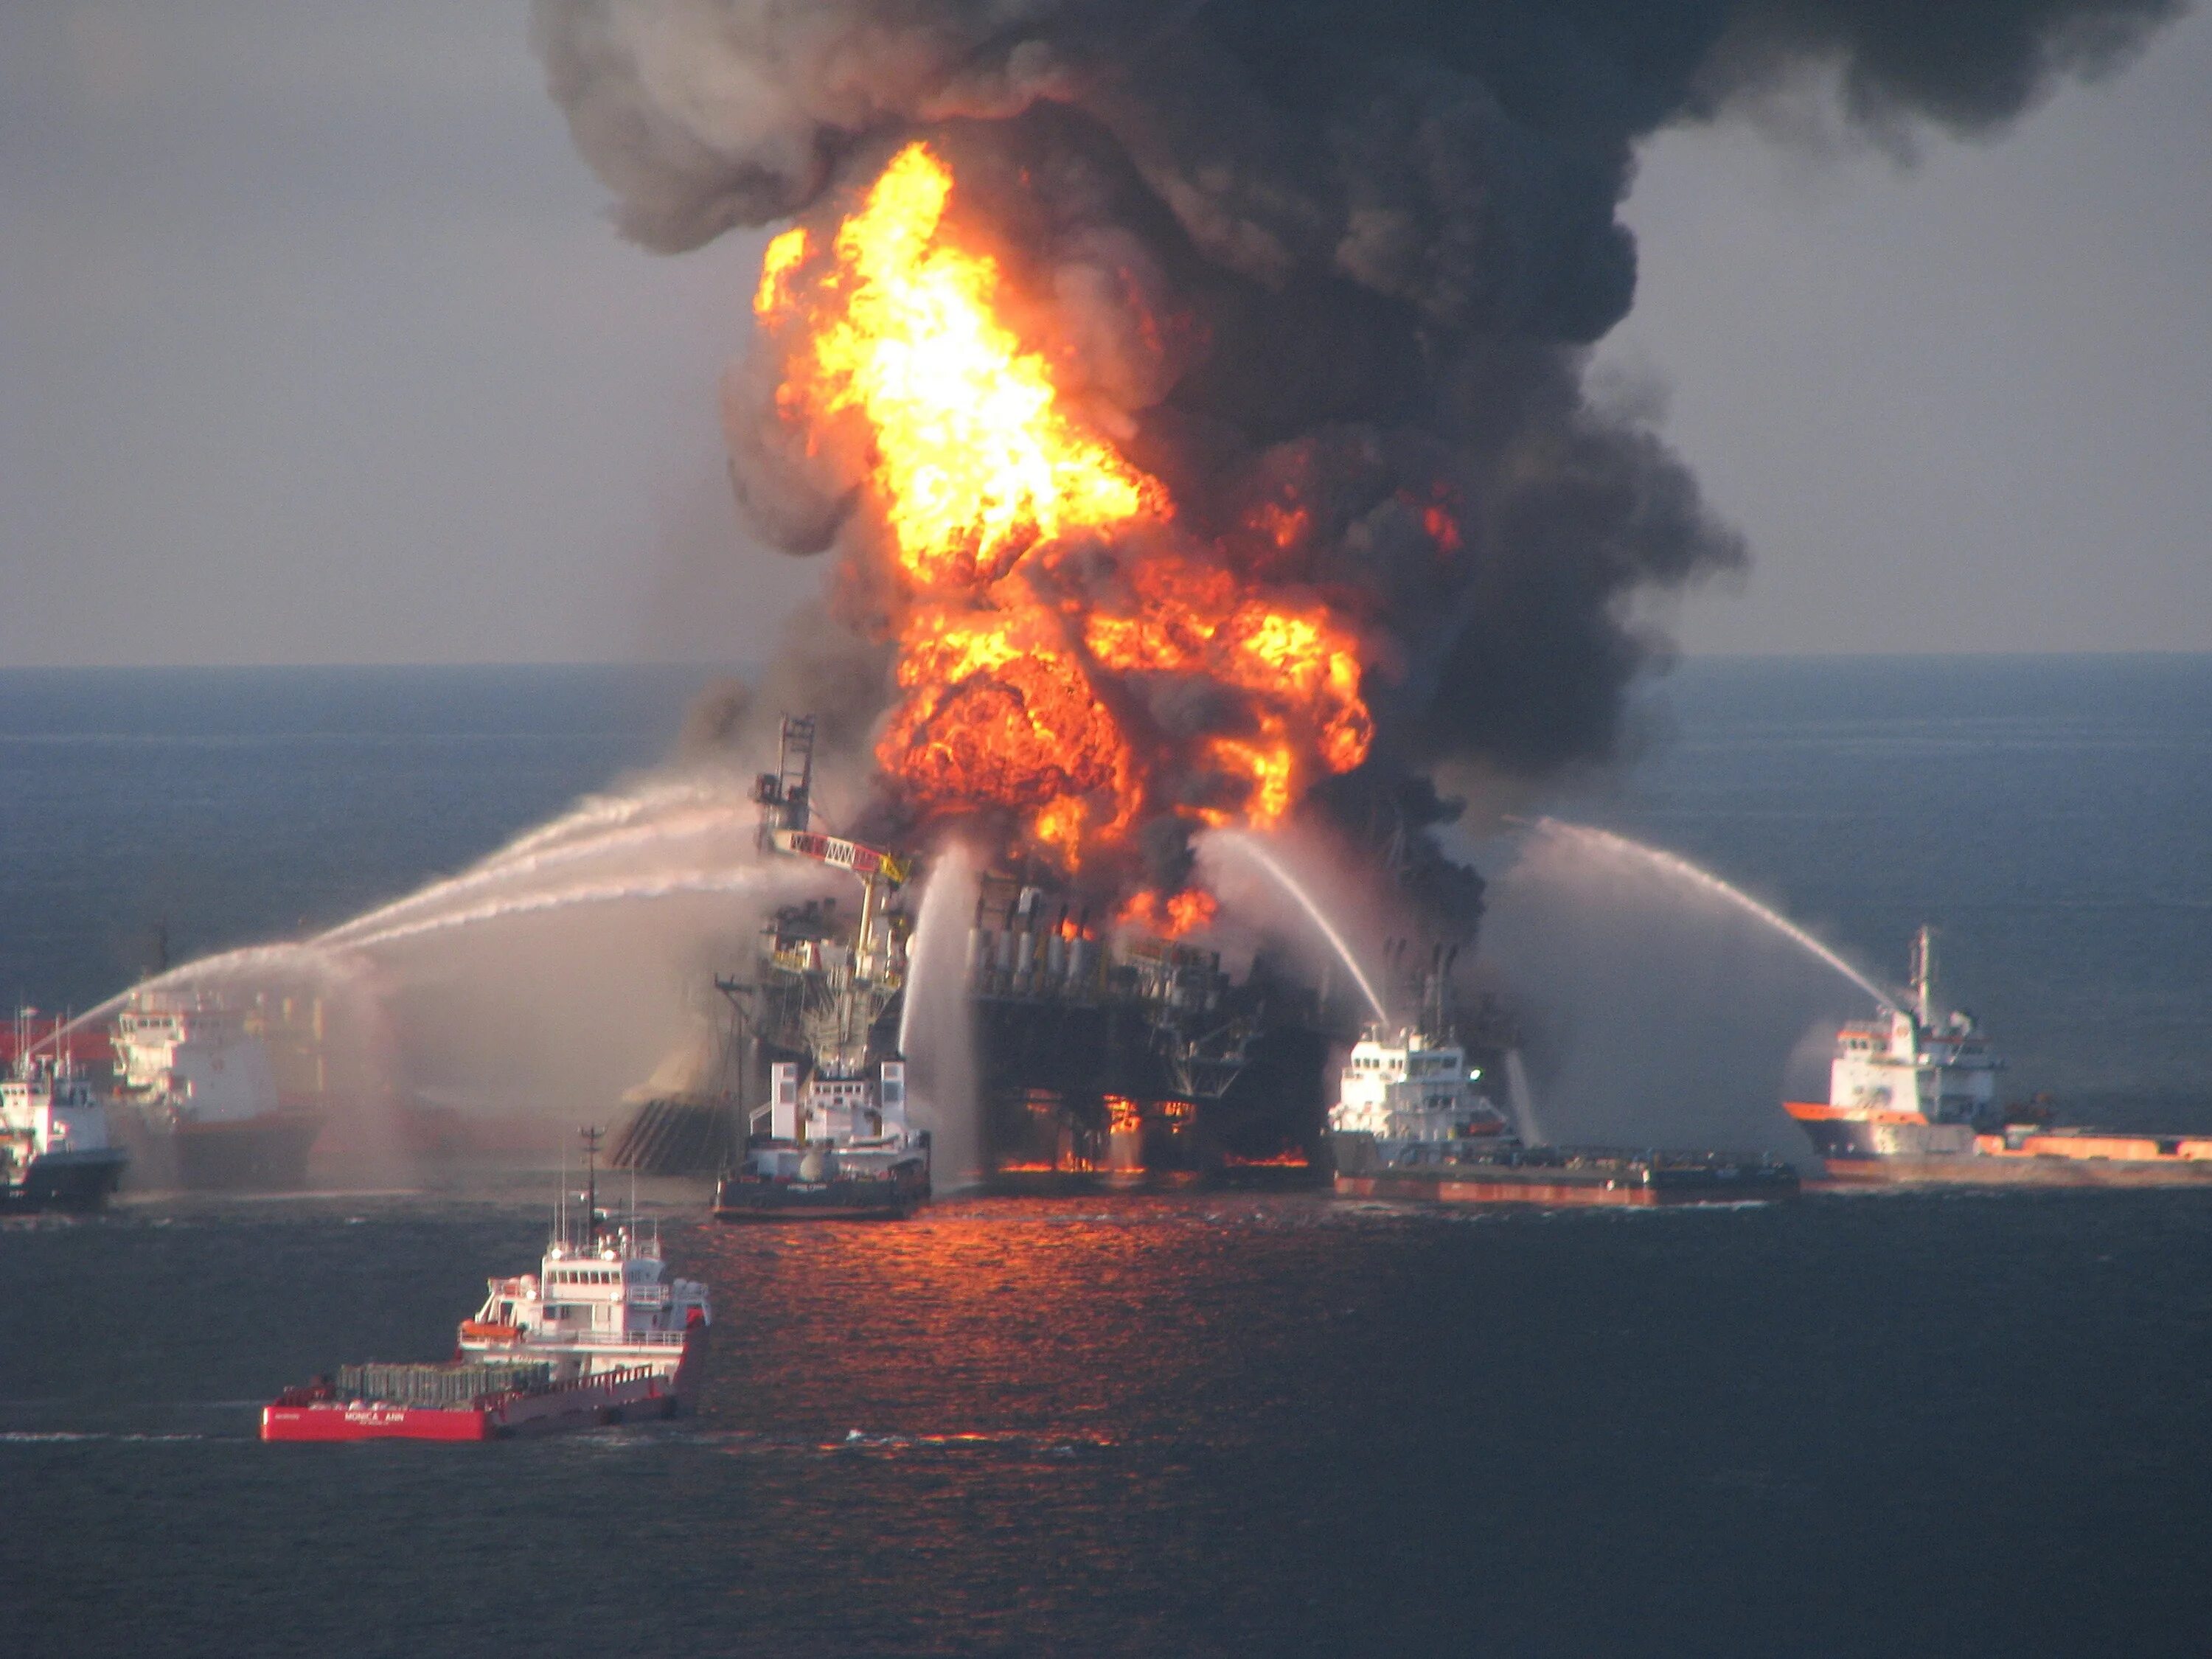 Взрыв нефтяной платформы Deepwater Horizon. Взрыв нефтяной платформы Deepwater Horizon в мексиканском заливе 2010. Глубоководный Горизонт 2010. Взрыв на нефтяной платформе Deepwater Horizon (20 апреля 2010). Взрыв на поверхности воды